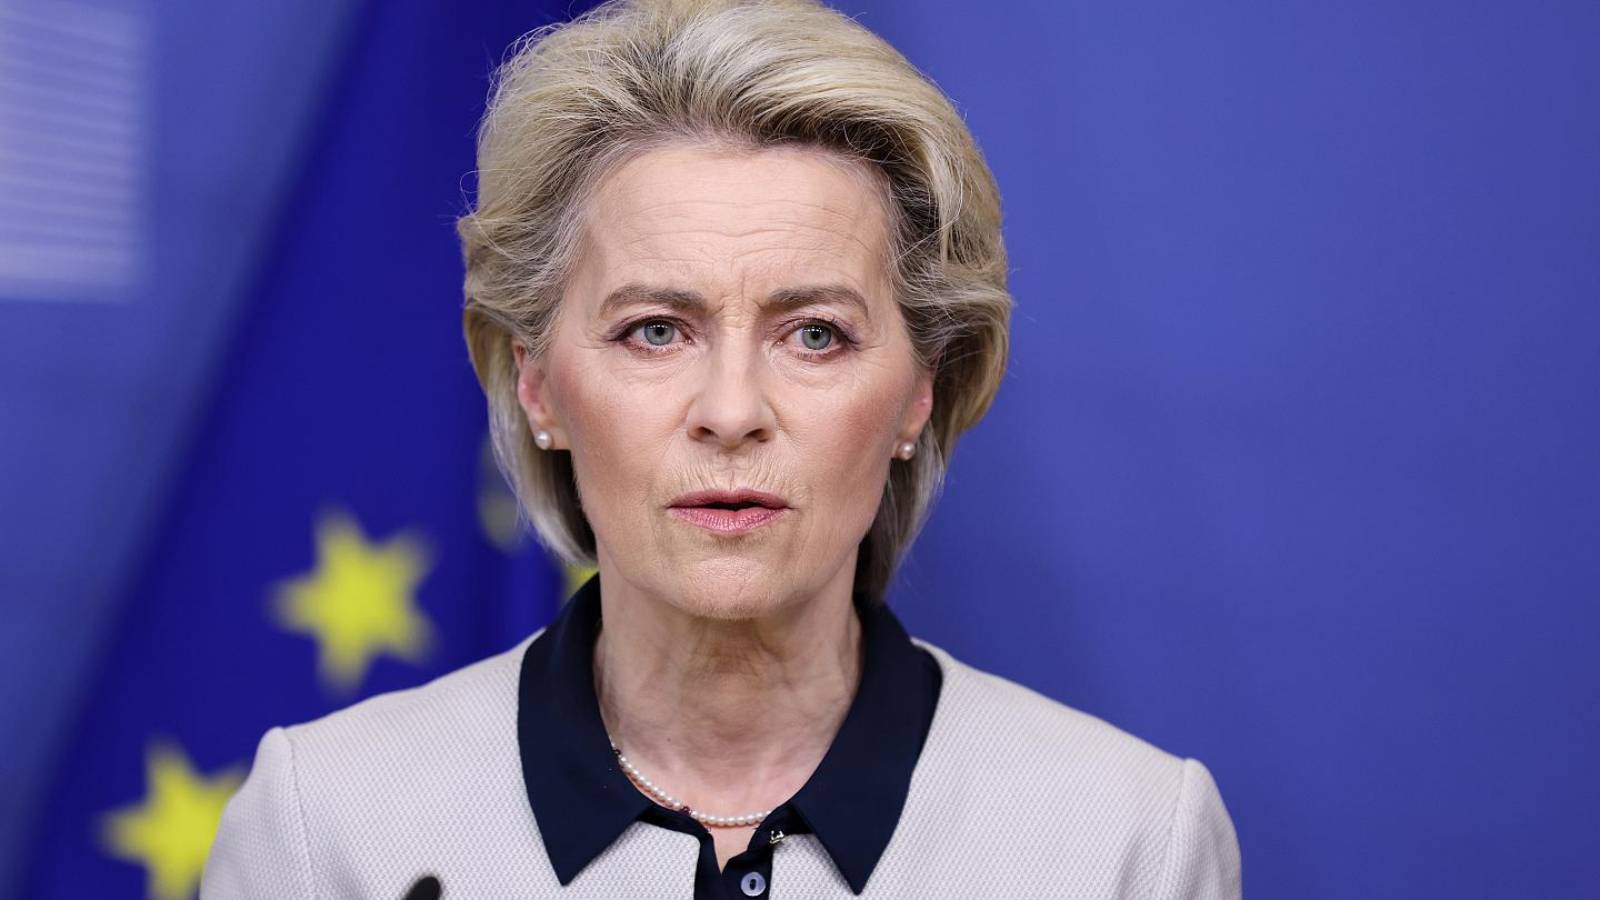 Ursula Von der Leyen Ruotsin liittyminen Suomen vahvaan Natoon